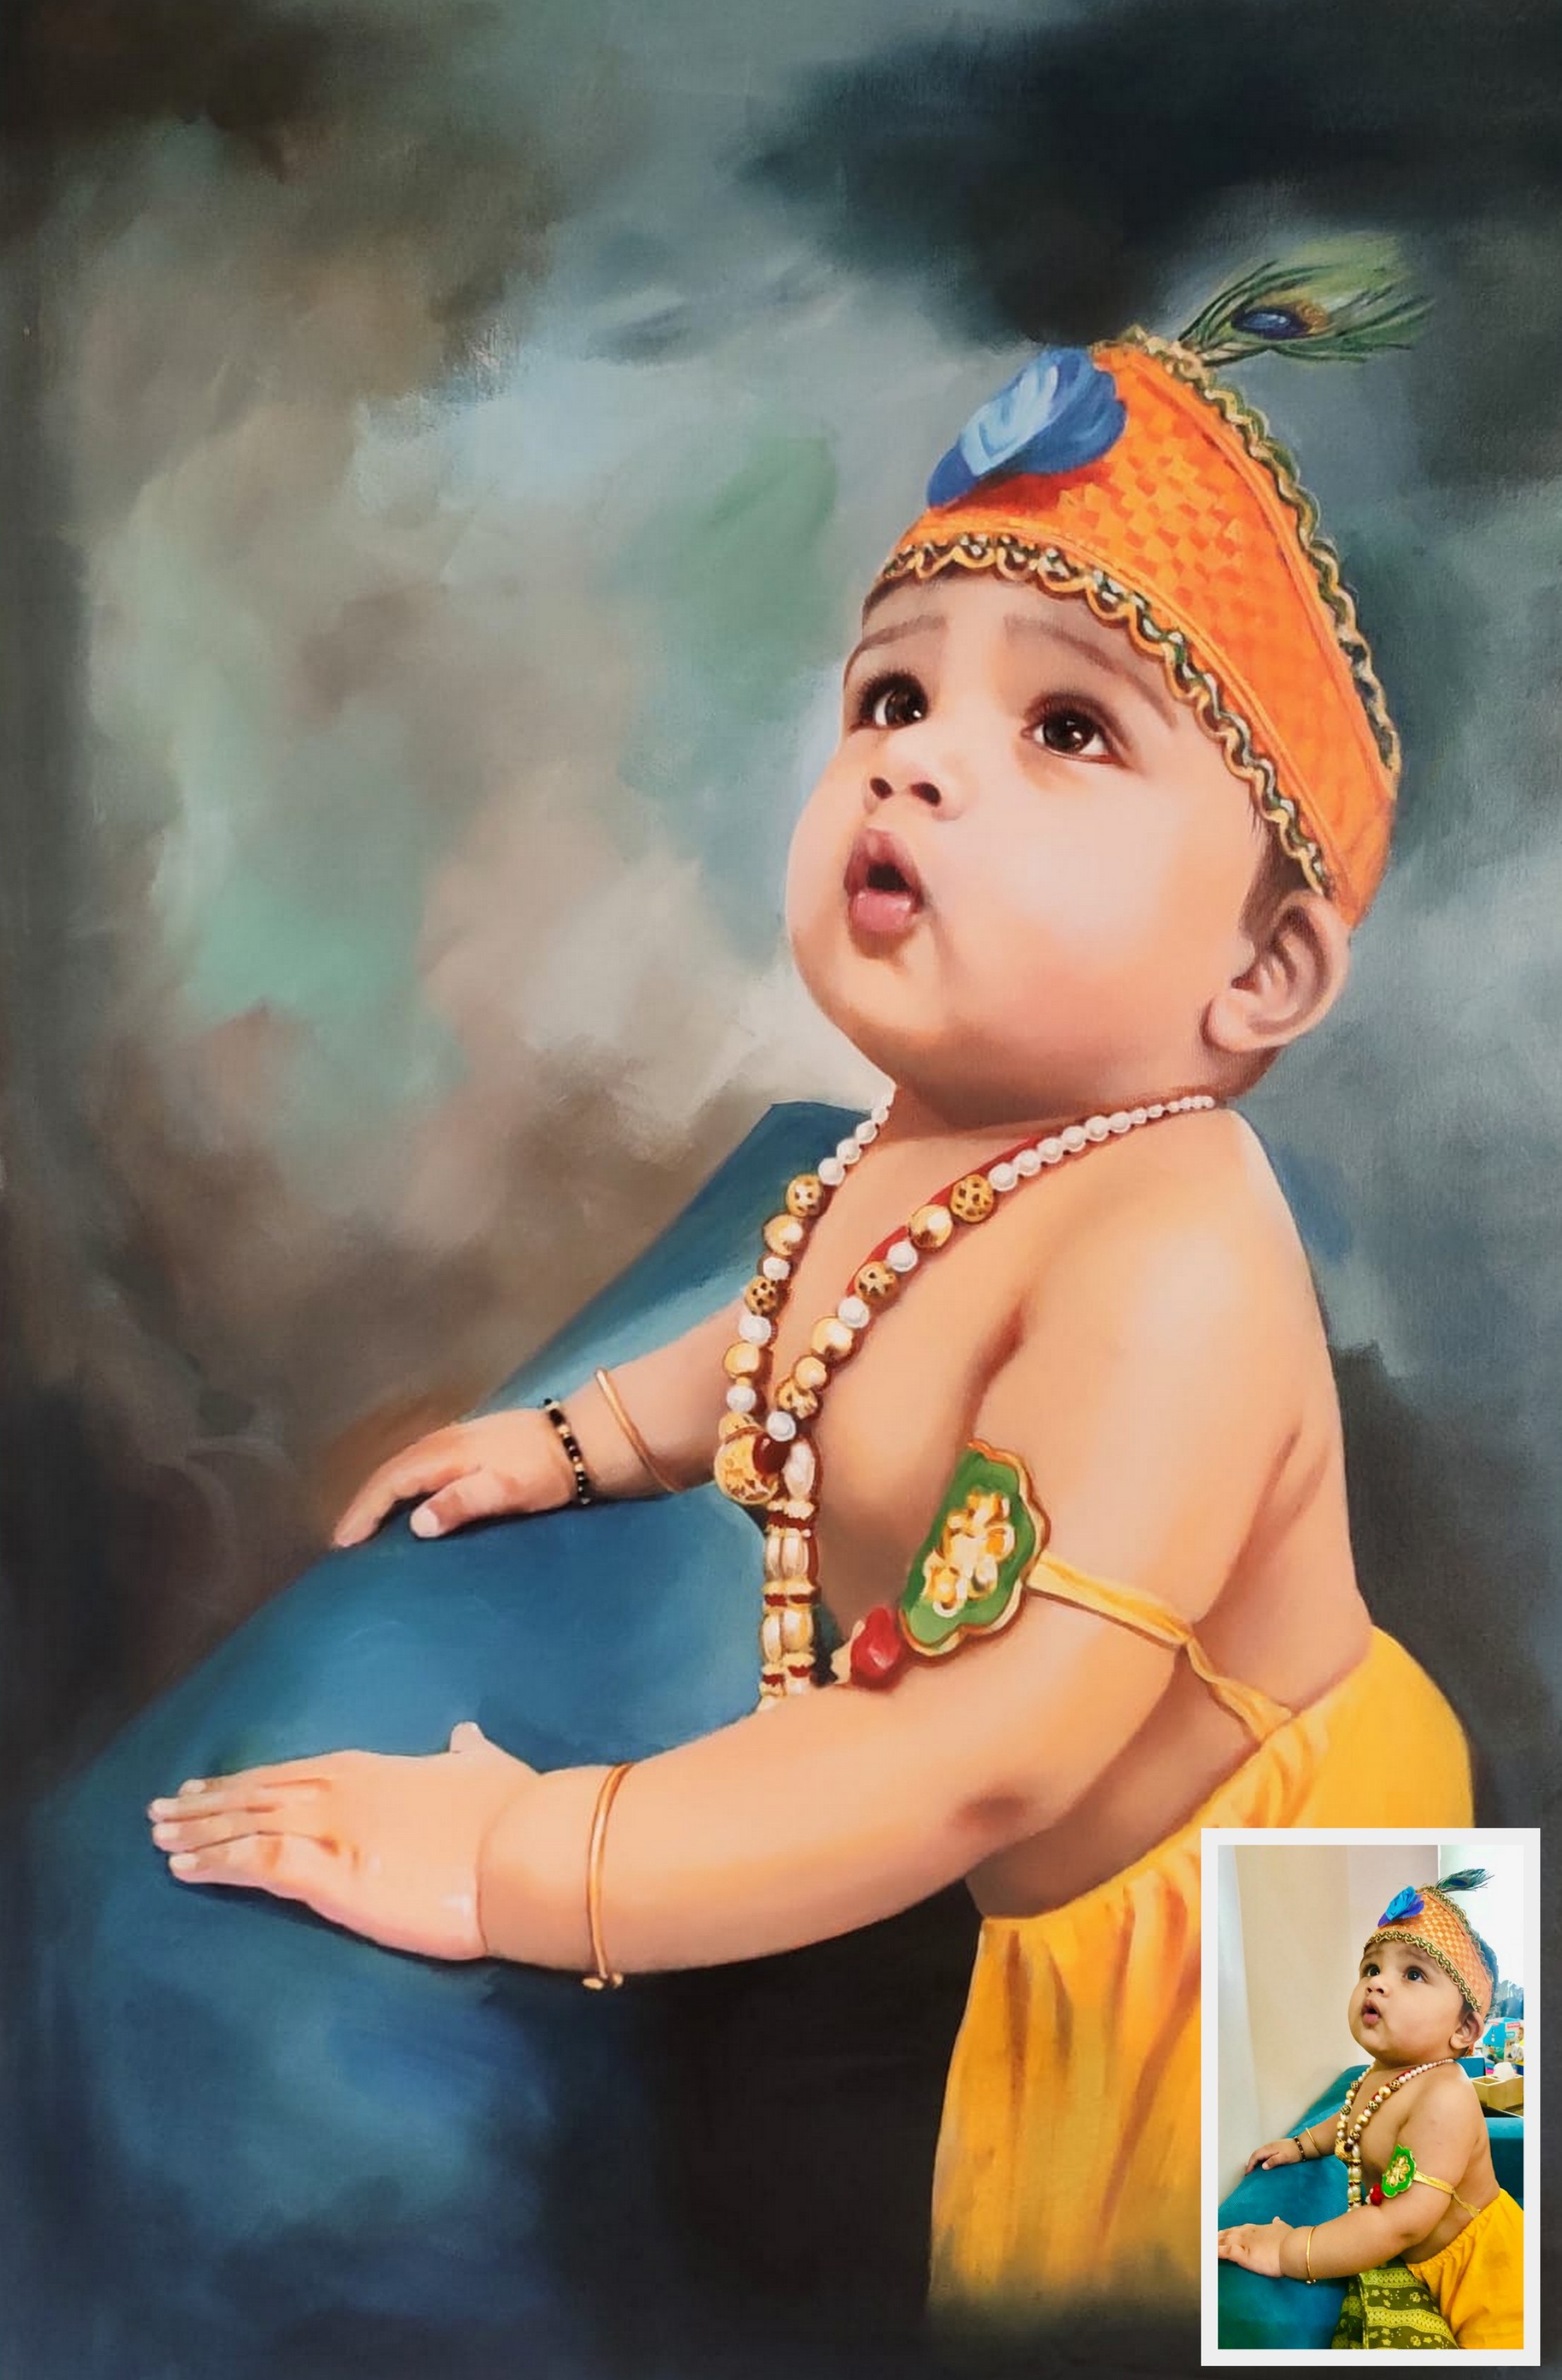 Baal Gopal, Krishna painting, baby dressed as Krishna, Oil portrait painting, portrait,